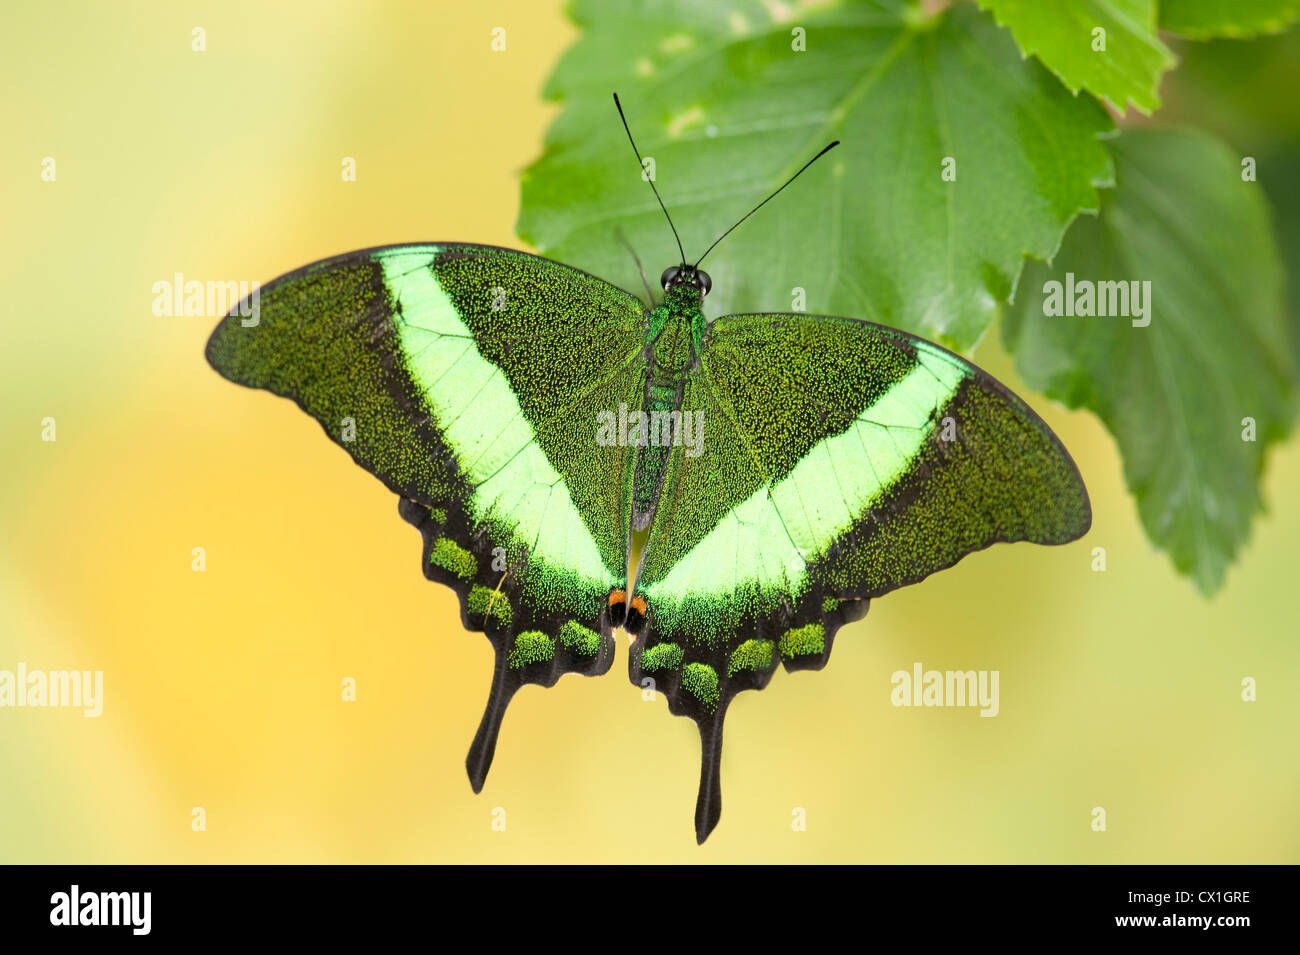 Emerald Swallowtail Butterfly Papilio palinurus Asie du Sud se reposant avec des ailes de couleur vert ouvert Banque D'Images